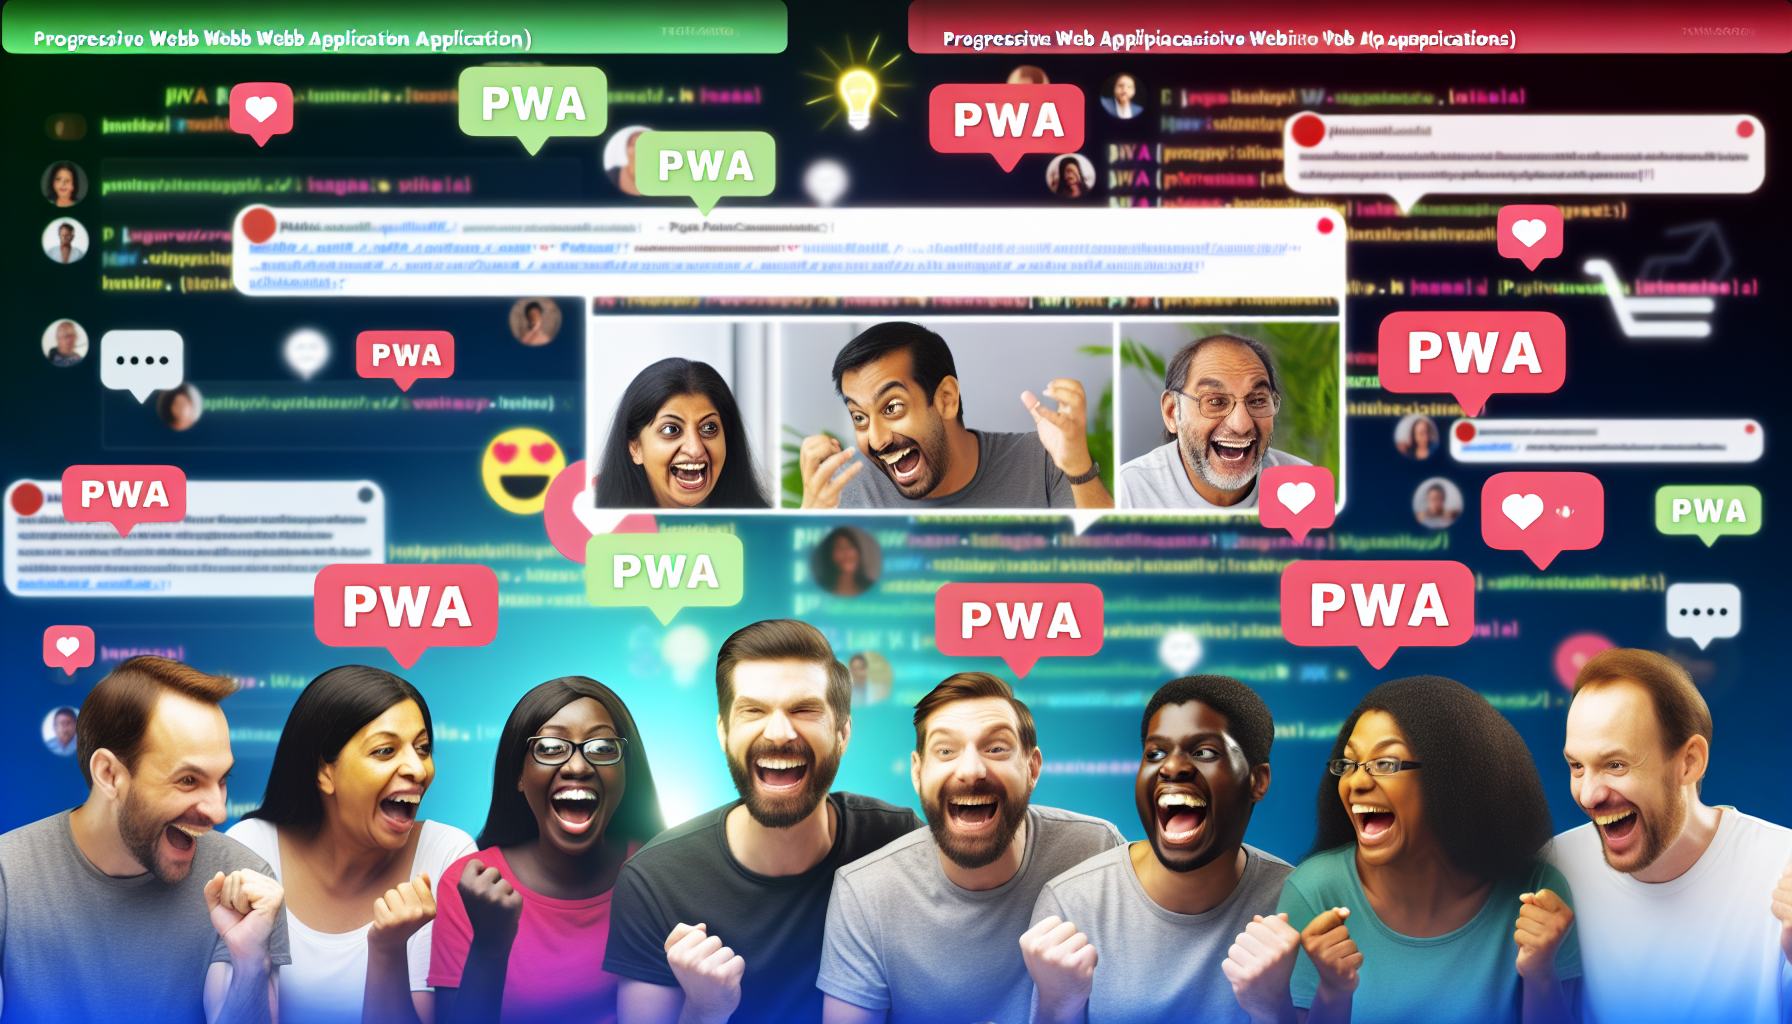 A vibrant online community discussion about PWAs